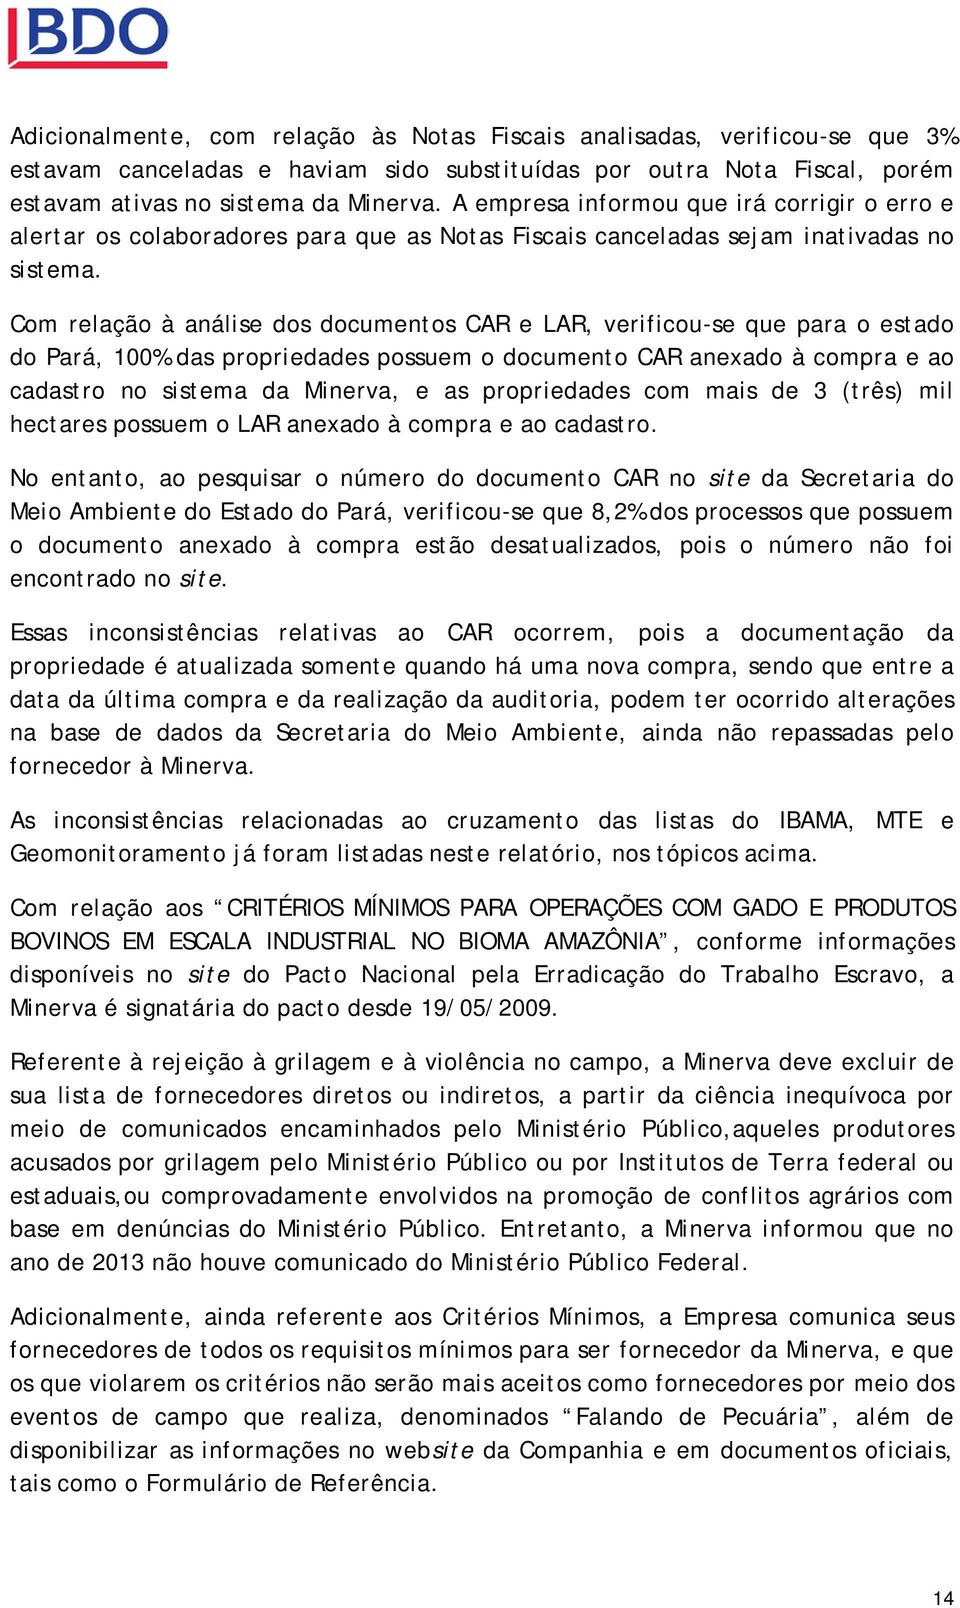 Com relação à análise dos documentos CAR e LAR, verificou-se que para o estado do Pará, 100% das propriedades possuem o documento CAR anexado à compra e ao cadastro no sistema da Minerva, e as